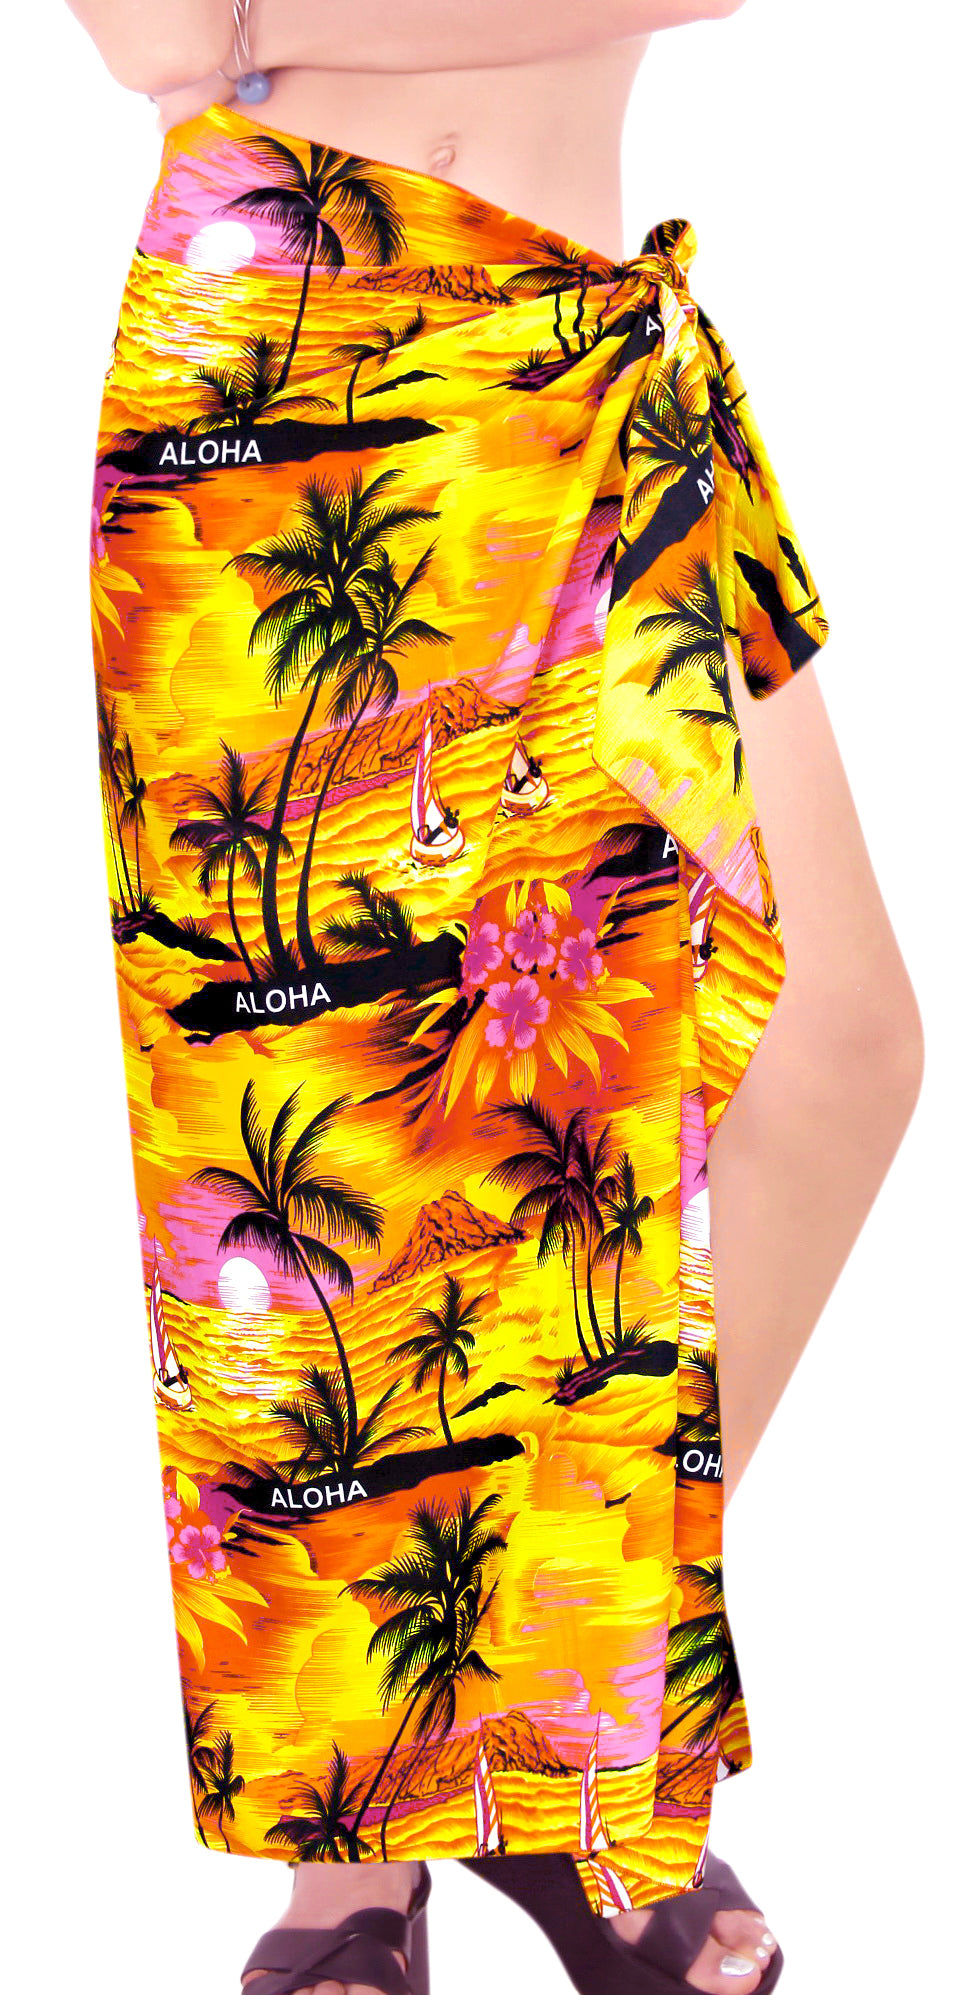 LA LEELA Women Bathing Suit Bikini Swimwear Beach Cover Up One Size Orange_K655